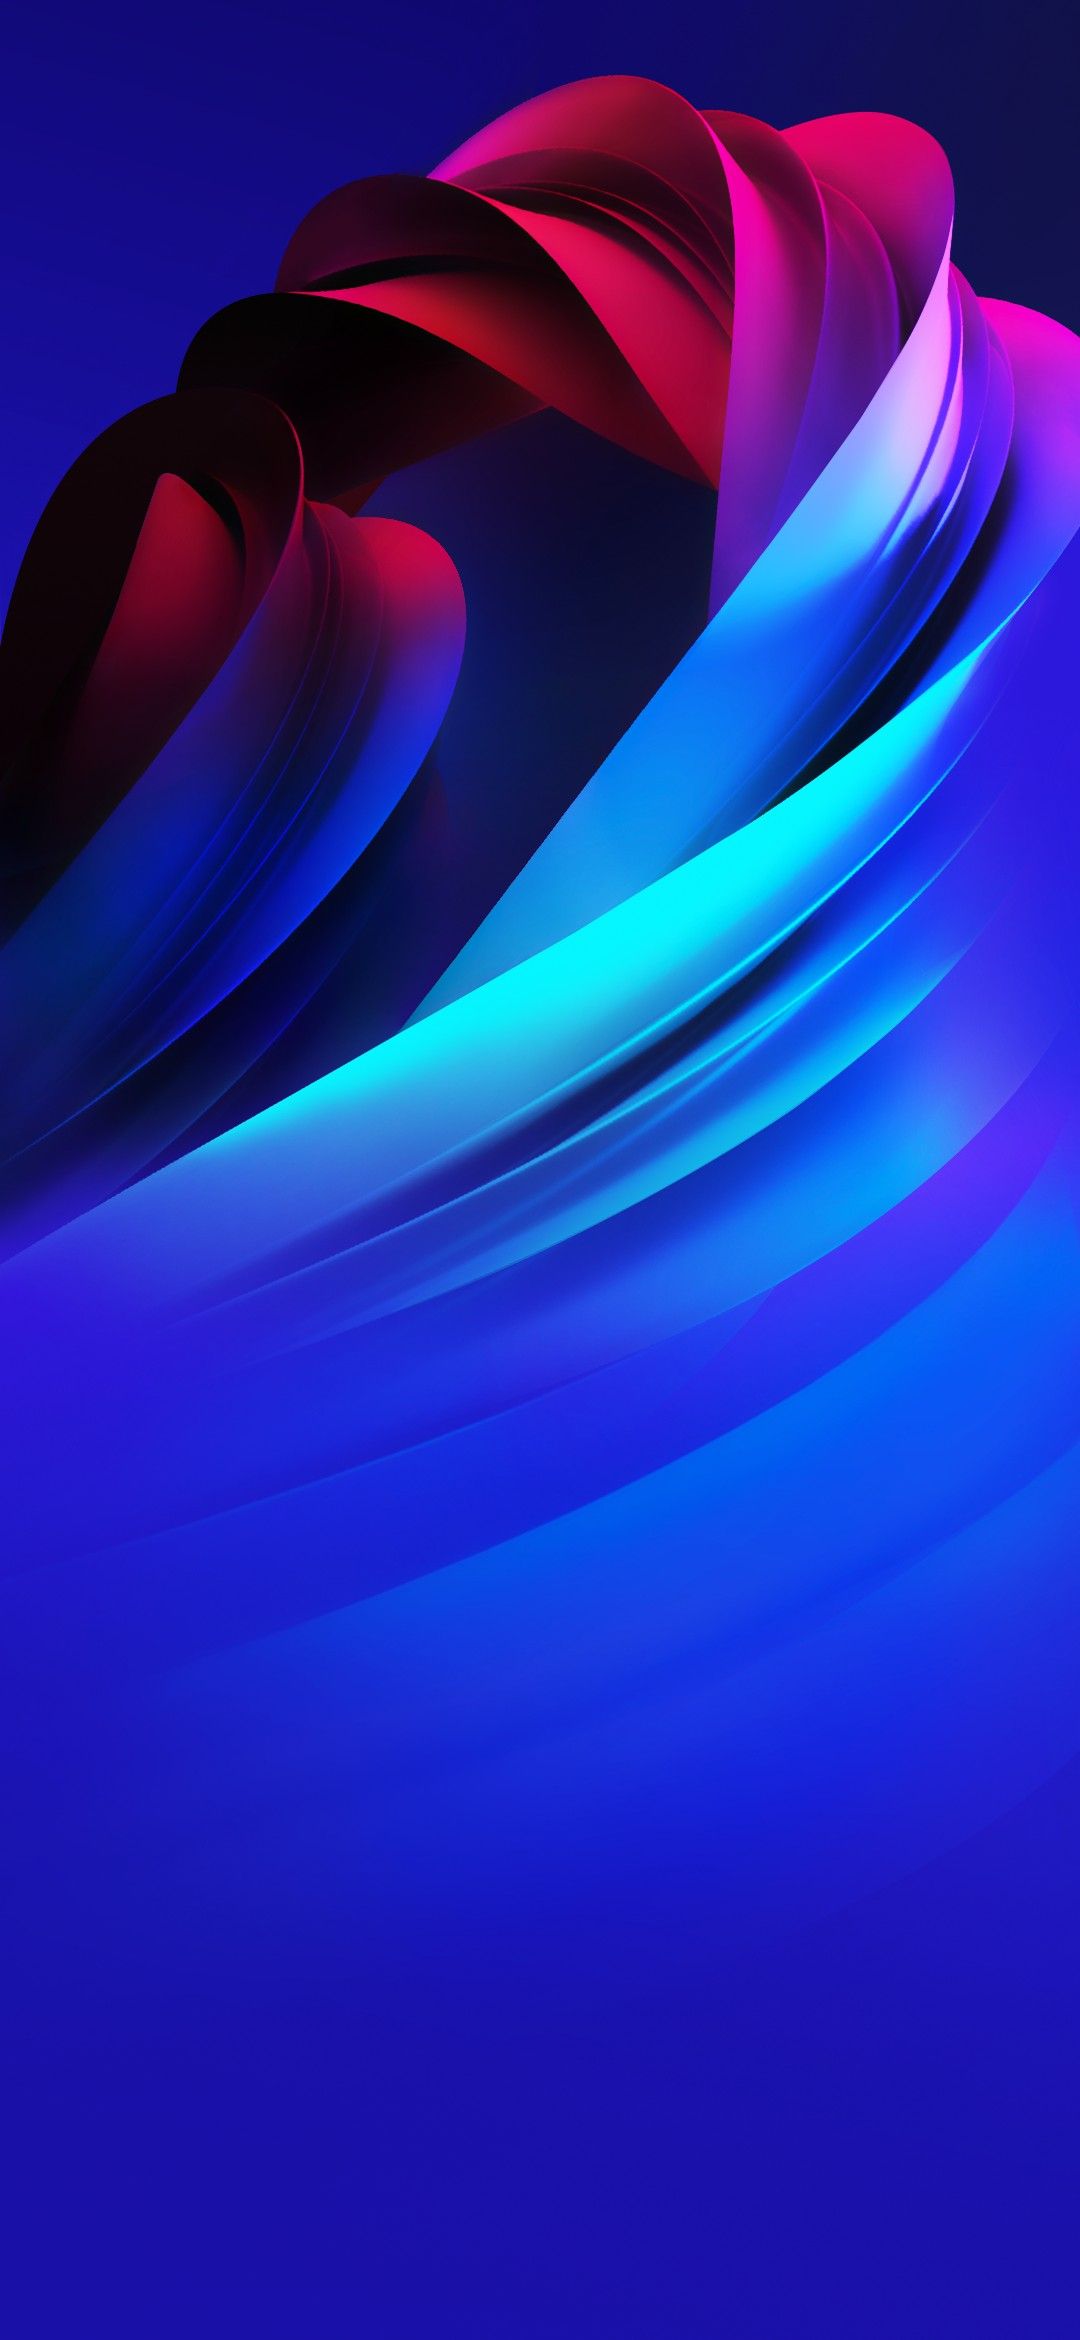 gn fond d'écran télécharger,bleu,violet,bleu électrique,lumière,violet